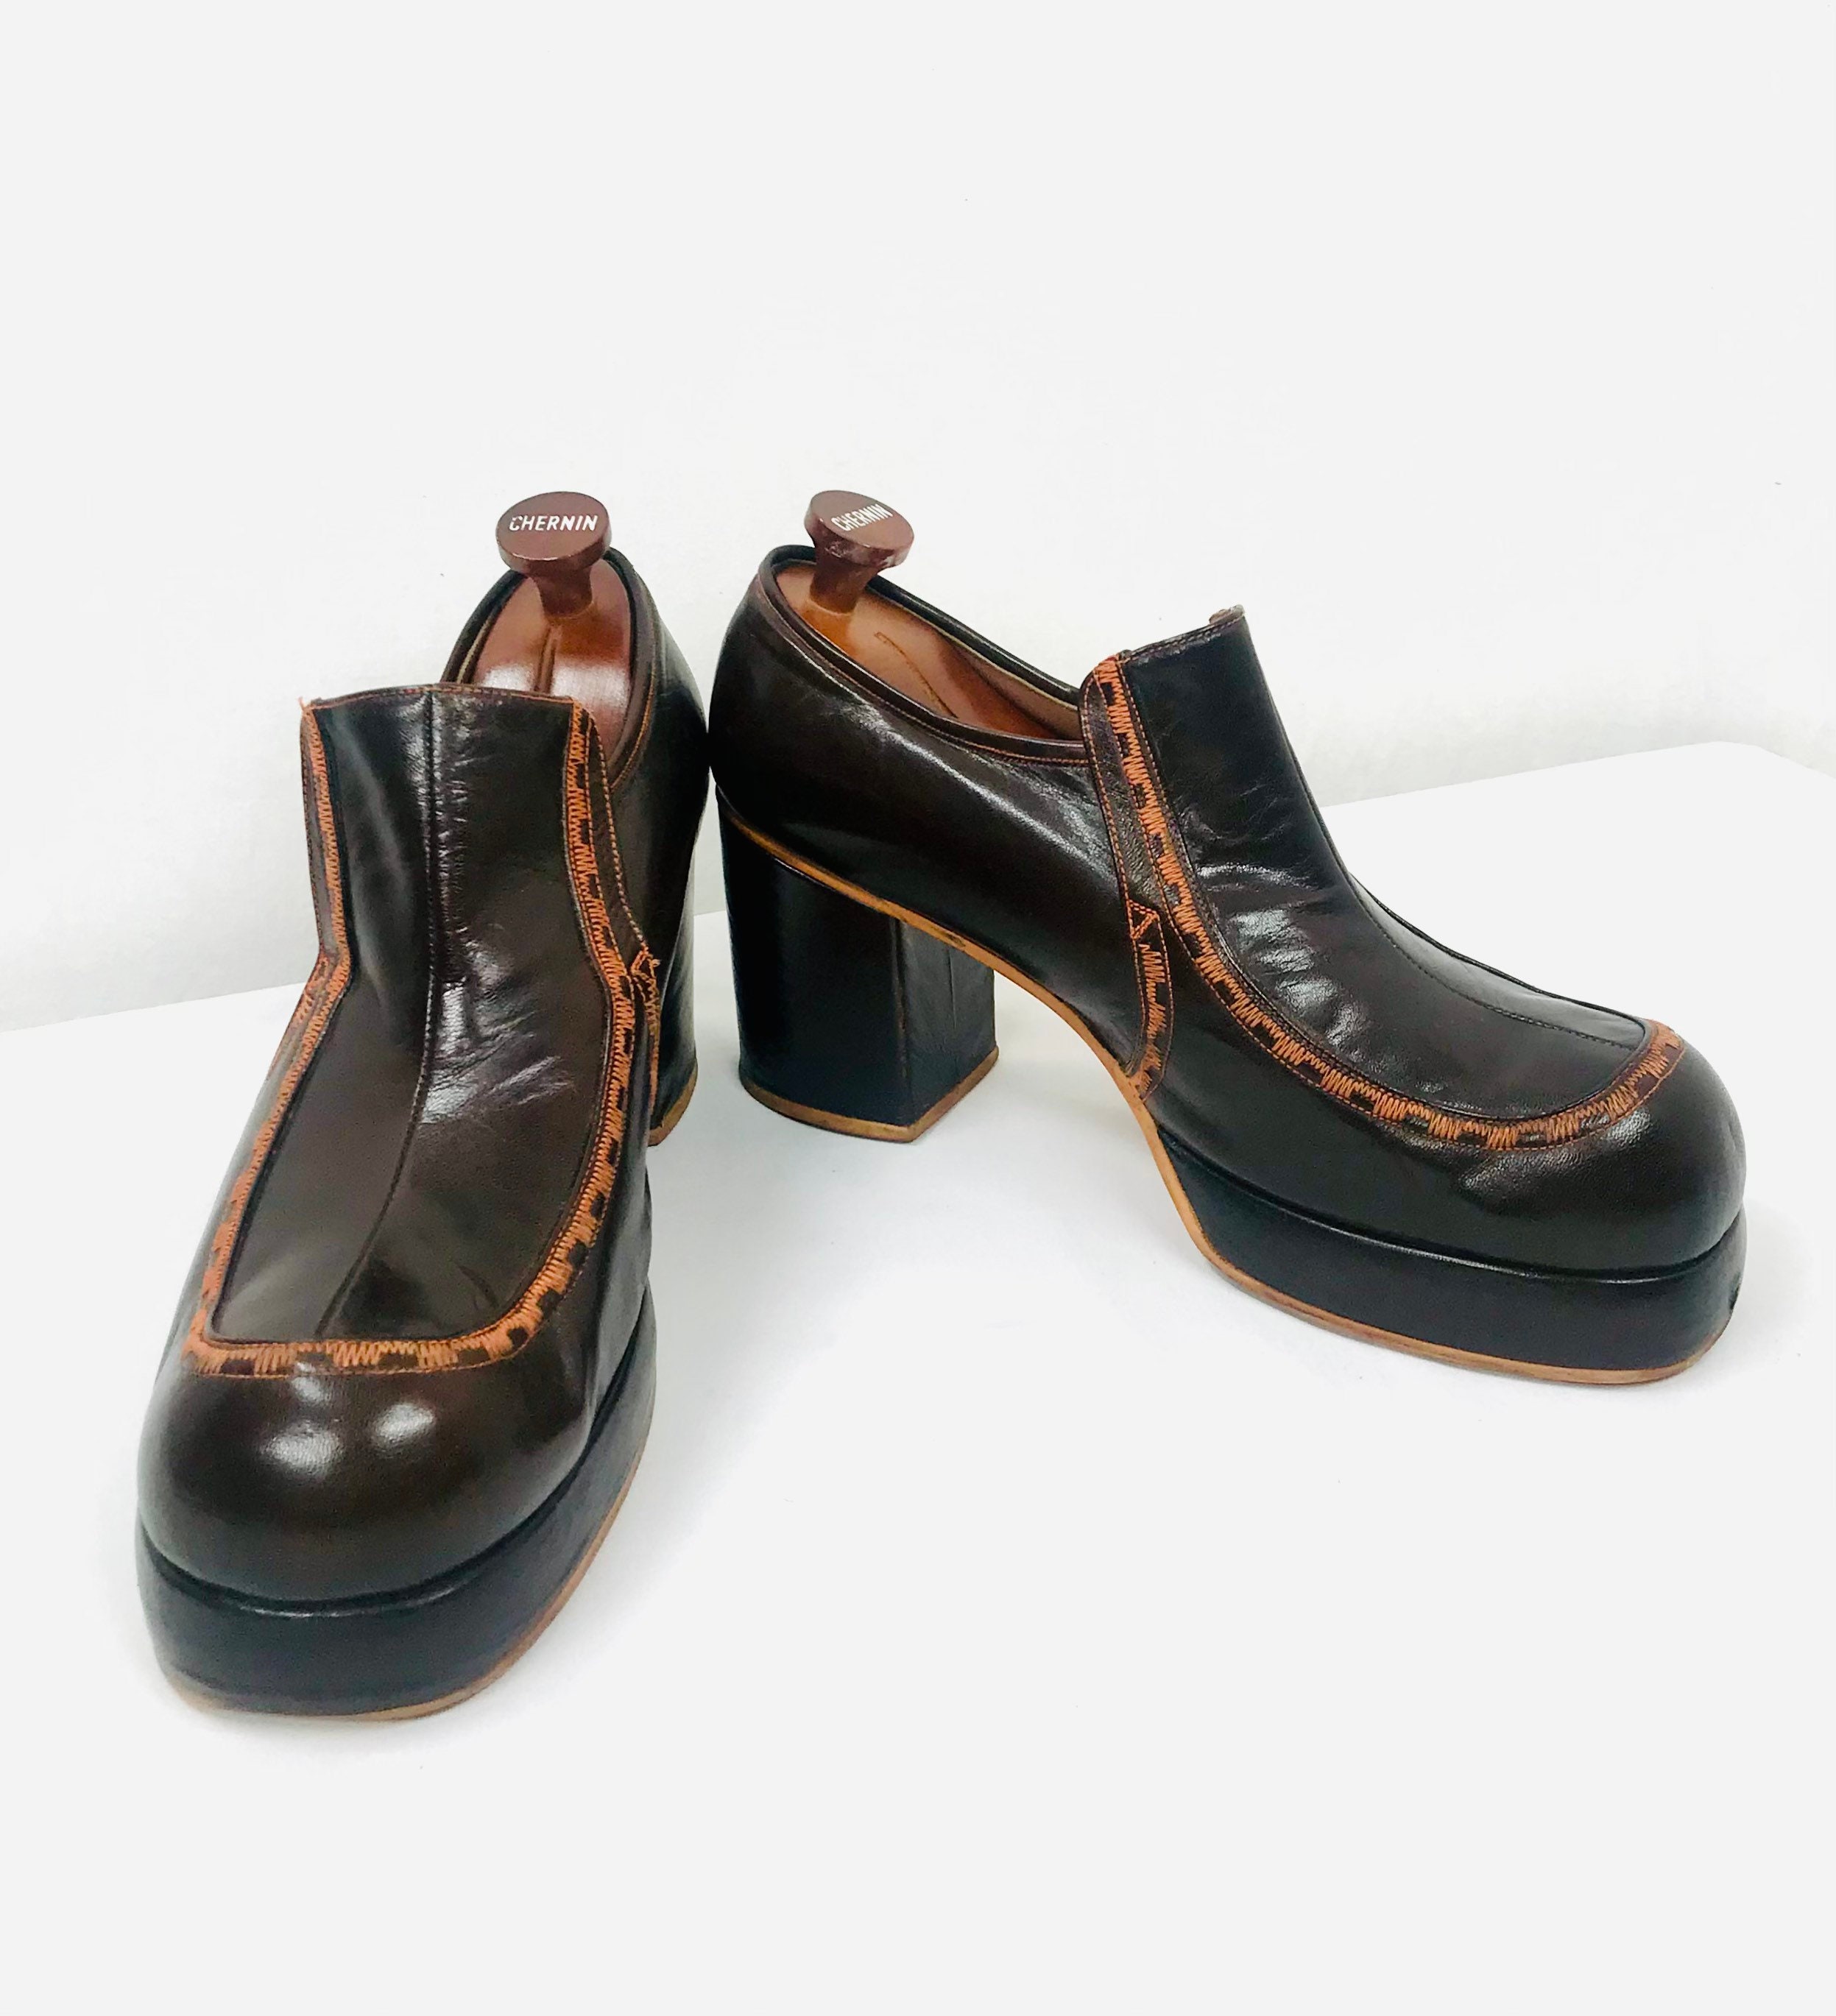 🔥 Anthropology Naya KASHA brown leather platform heel- today only $35 | Platform  heels, Leather, Brown leather